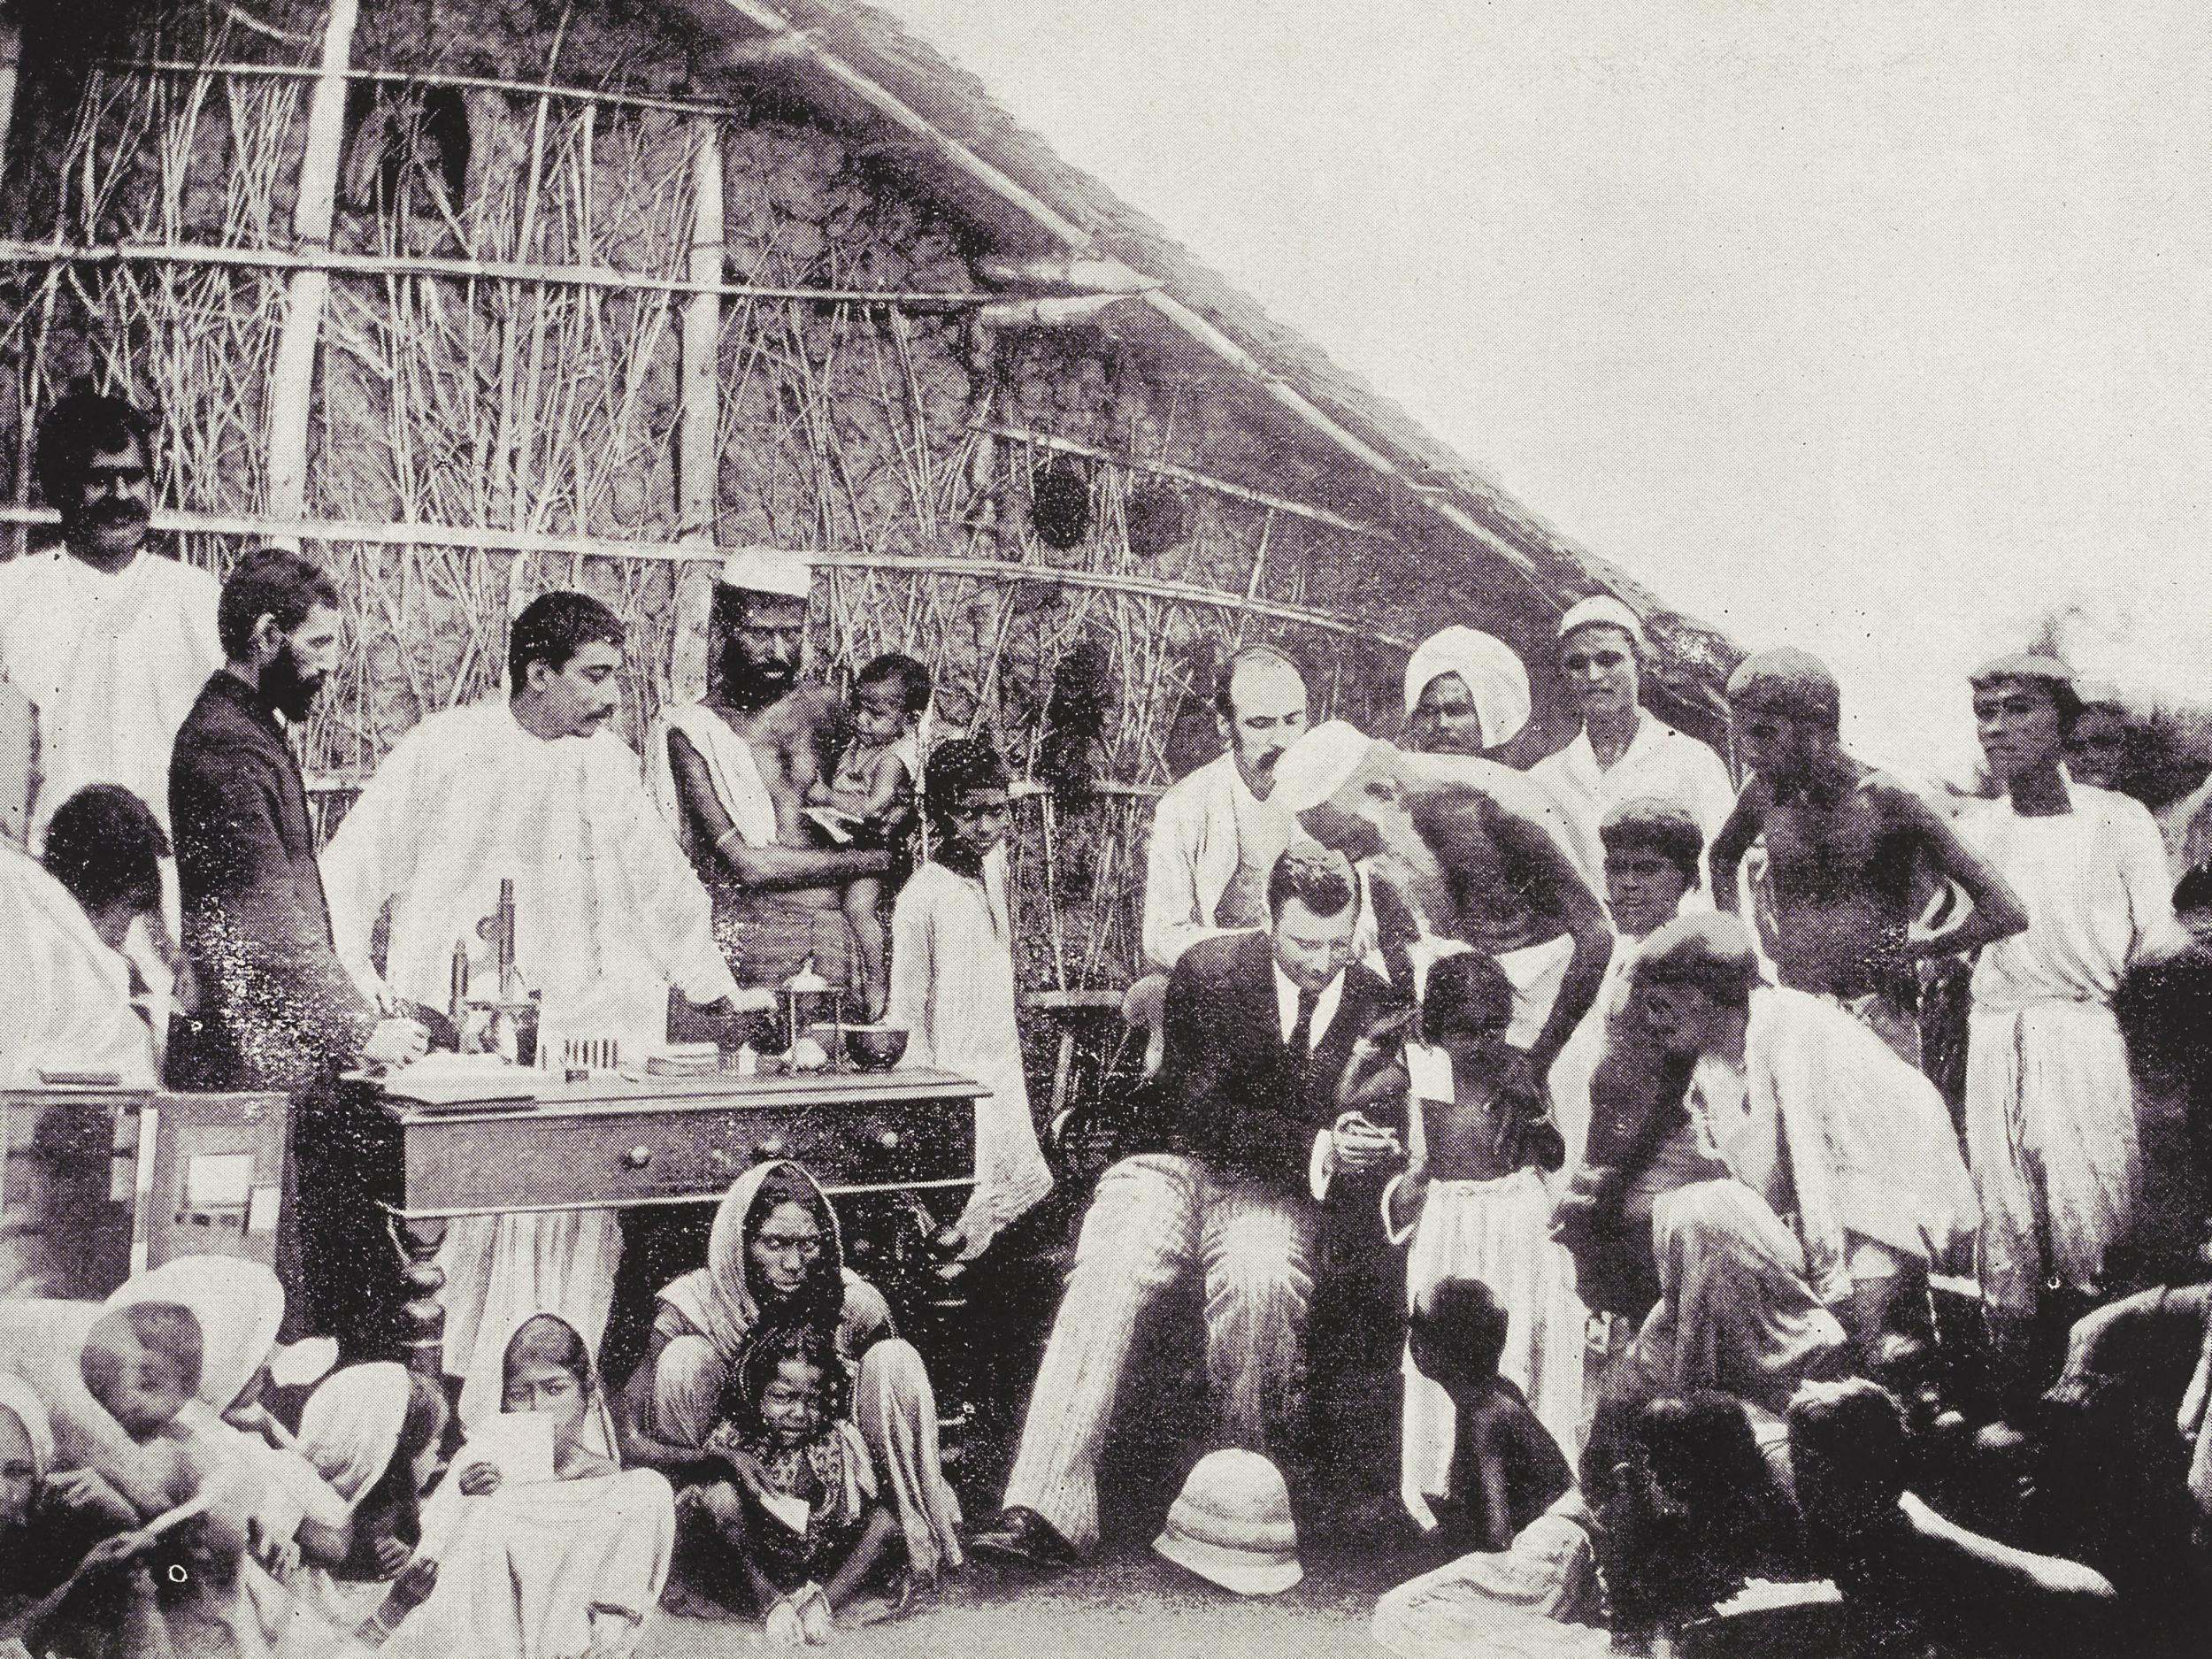 Anti-cholera inoculation in 1894 Calcutta